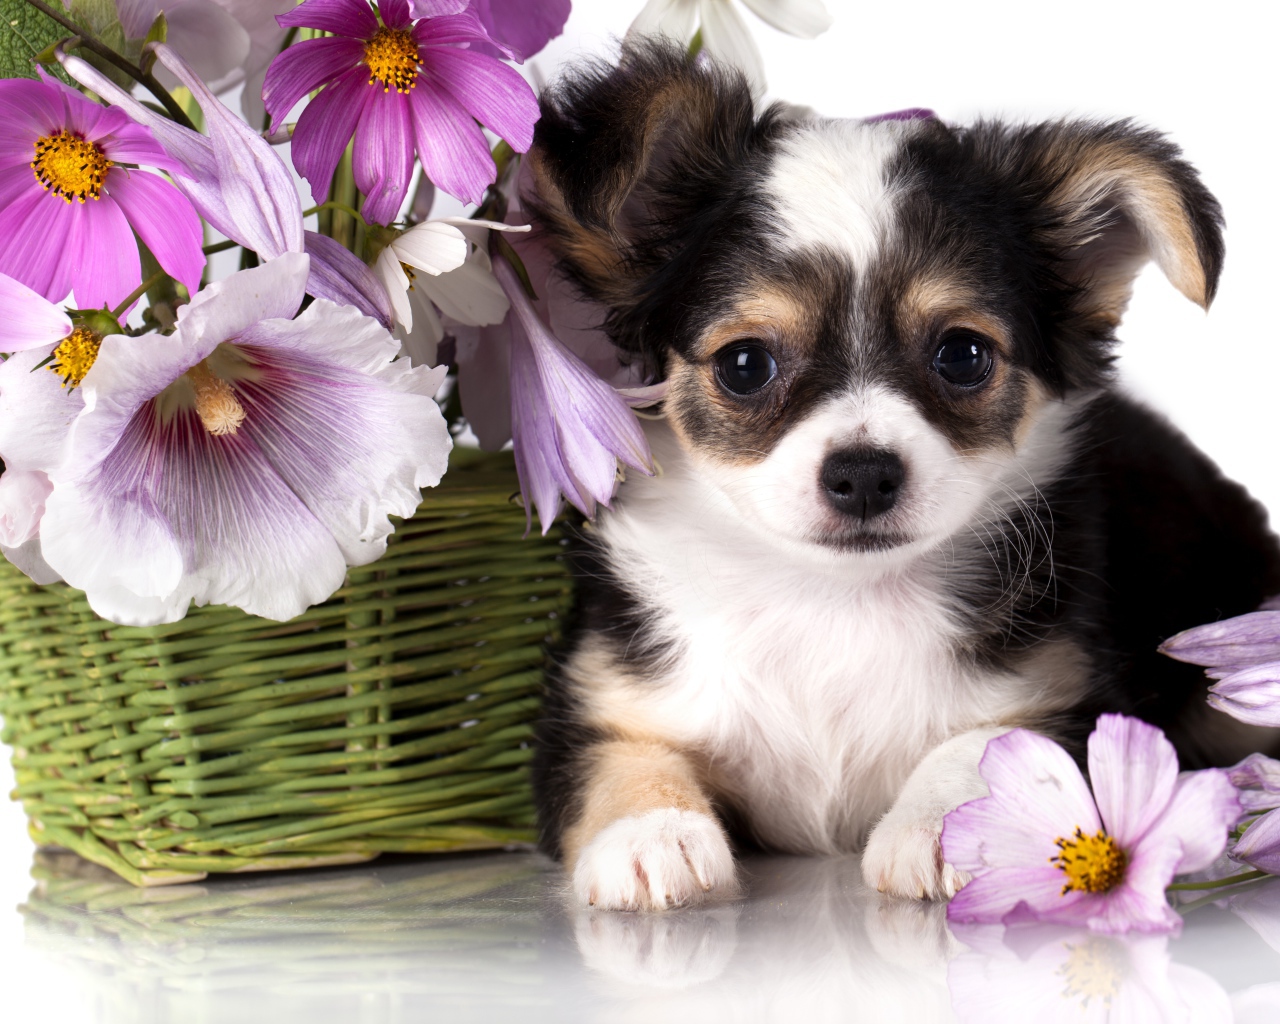 Маленький щенок чихуахуа с корзиной цветов космеи